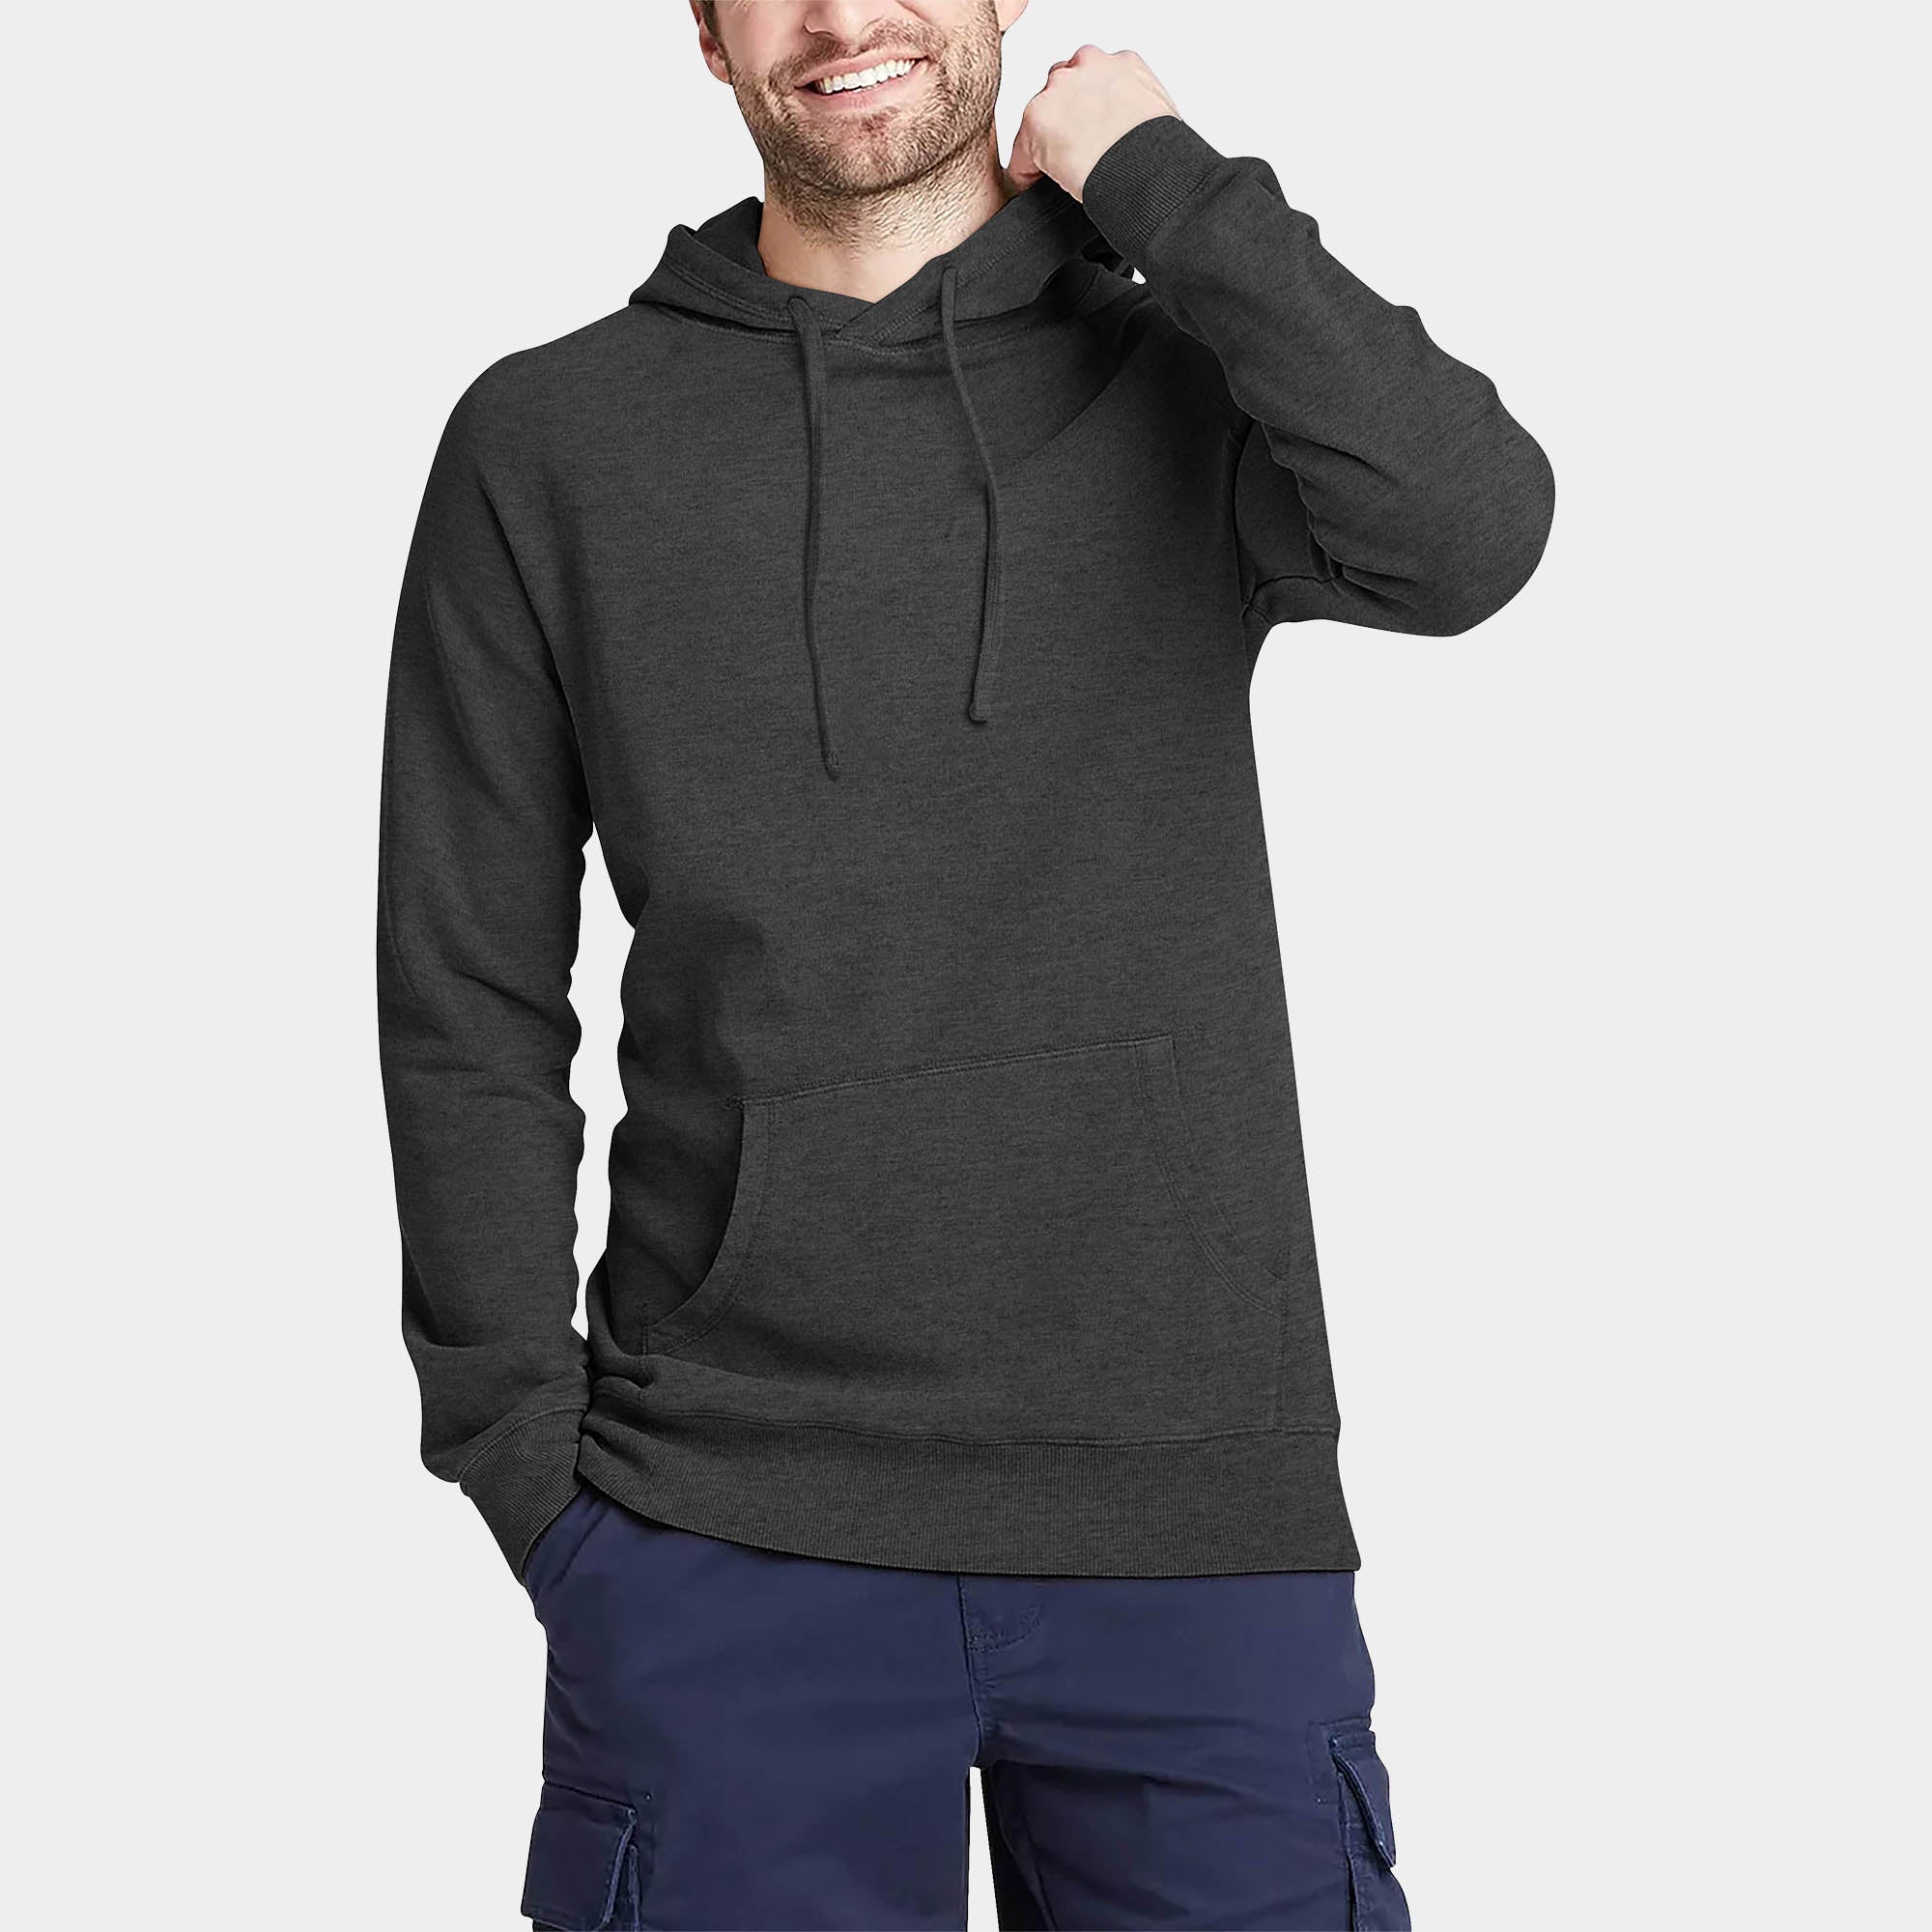 hoodie_hoodies for men_hooded sweatshirt_custom hoodies_cheap hoodies_couple hoodies_pullover hoodie_mens pullover hoodie_Charcoal